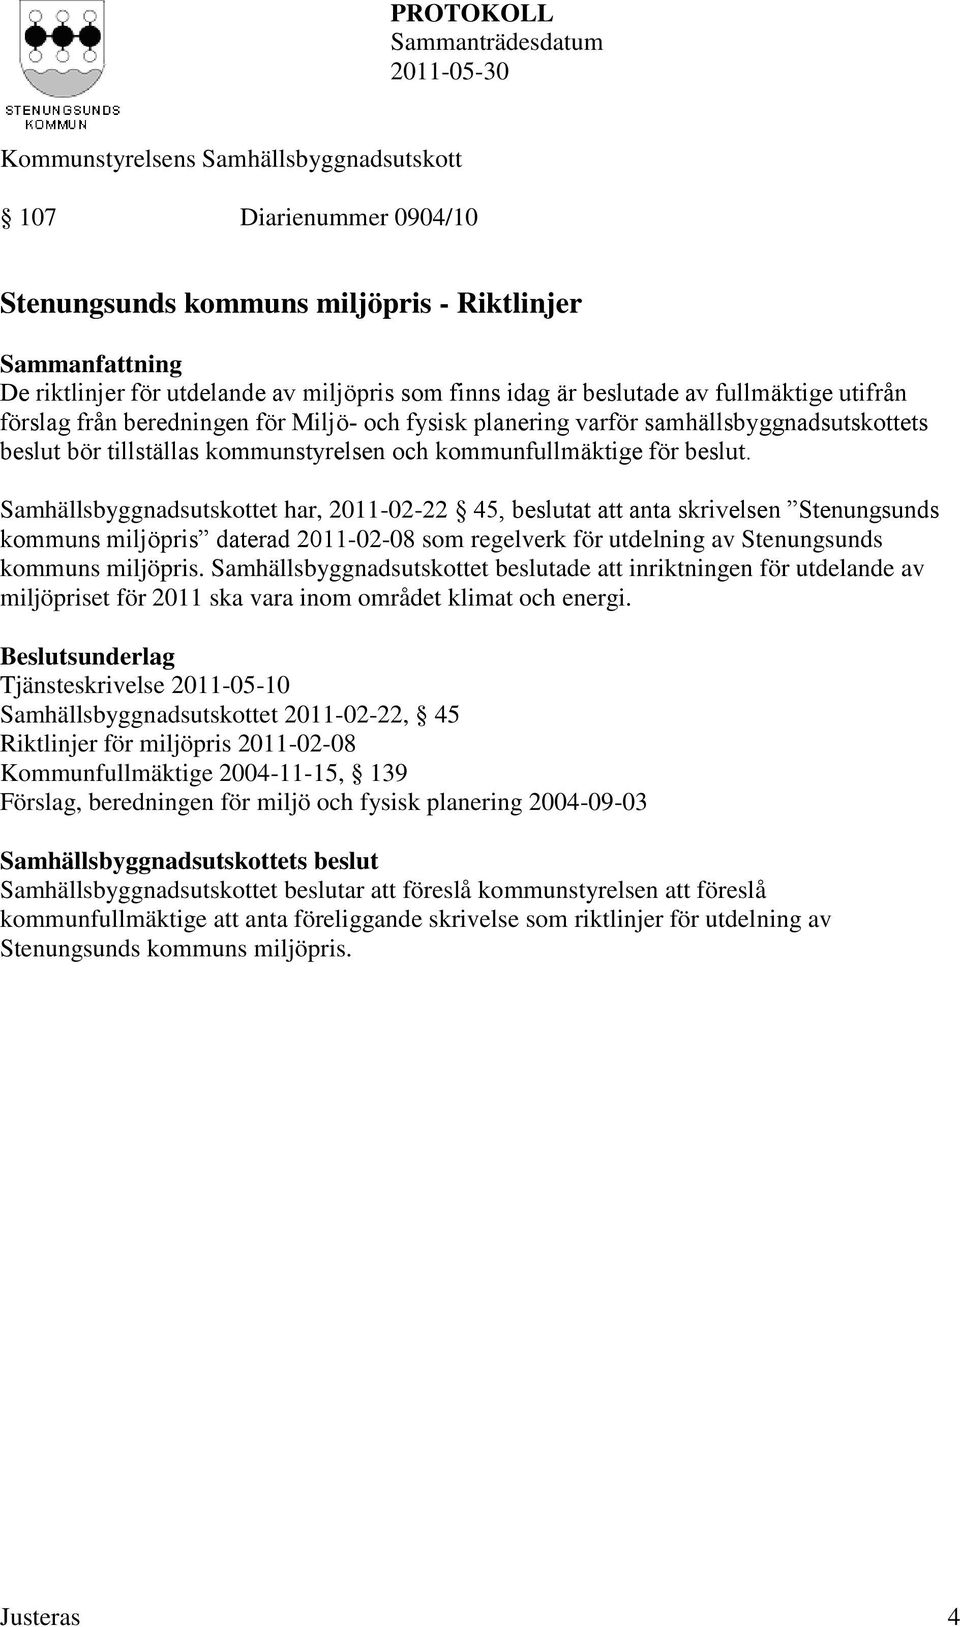 Samhällsbyggnadsutskottet har, 2011-02-22 45, beslutat att anta skrivelsen Stenungsunds kommuns miljöpris daterad 2011-02-08 som regelverk för utdelning av Stenungsunds kommuns miljöpris.